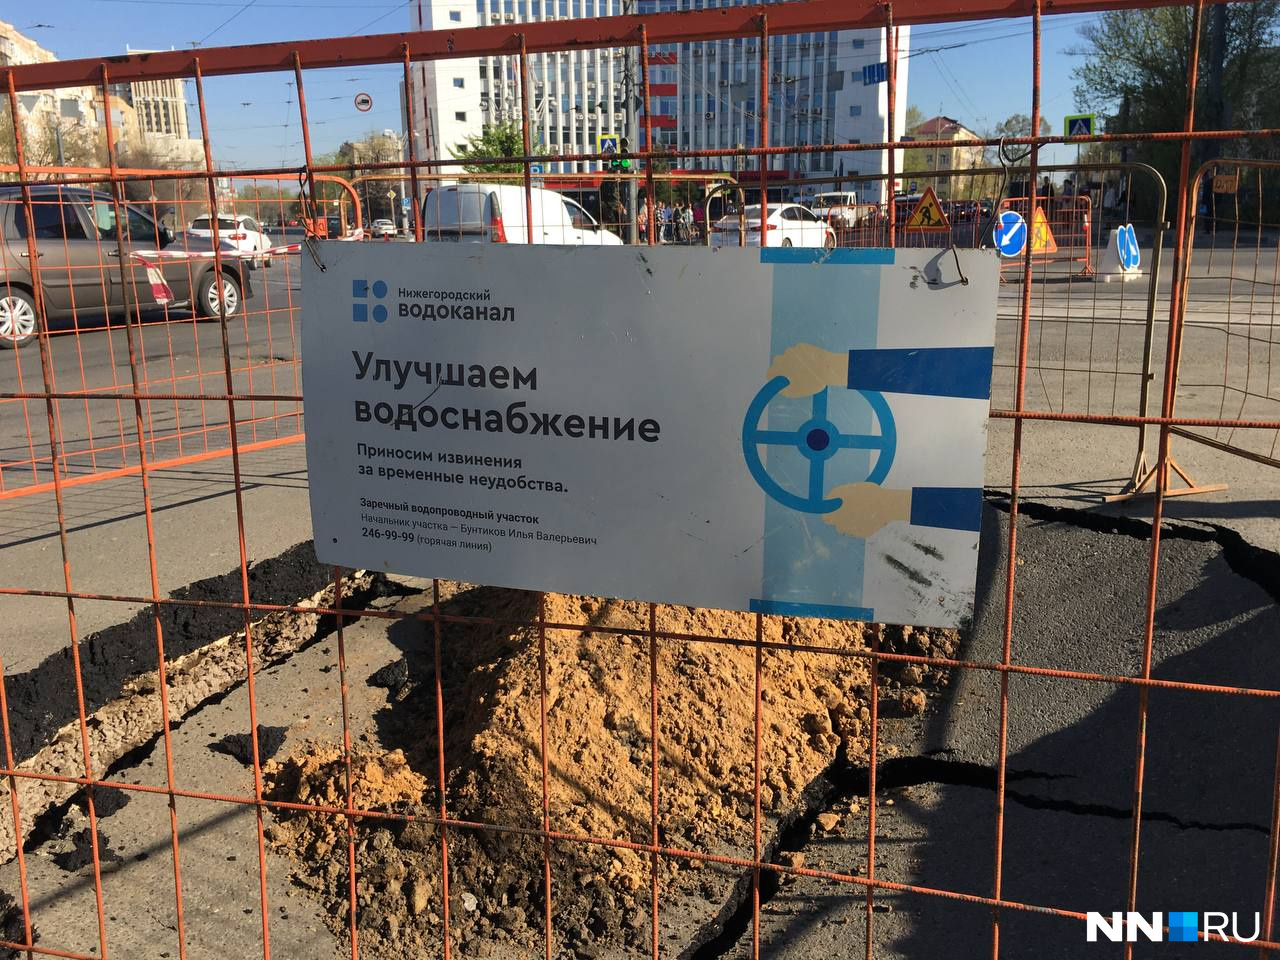 NN.RU обратился с запросом в городскую администрацию и «Нижегородский водоканал»